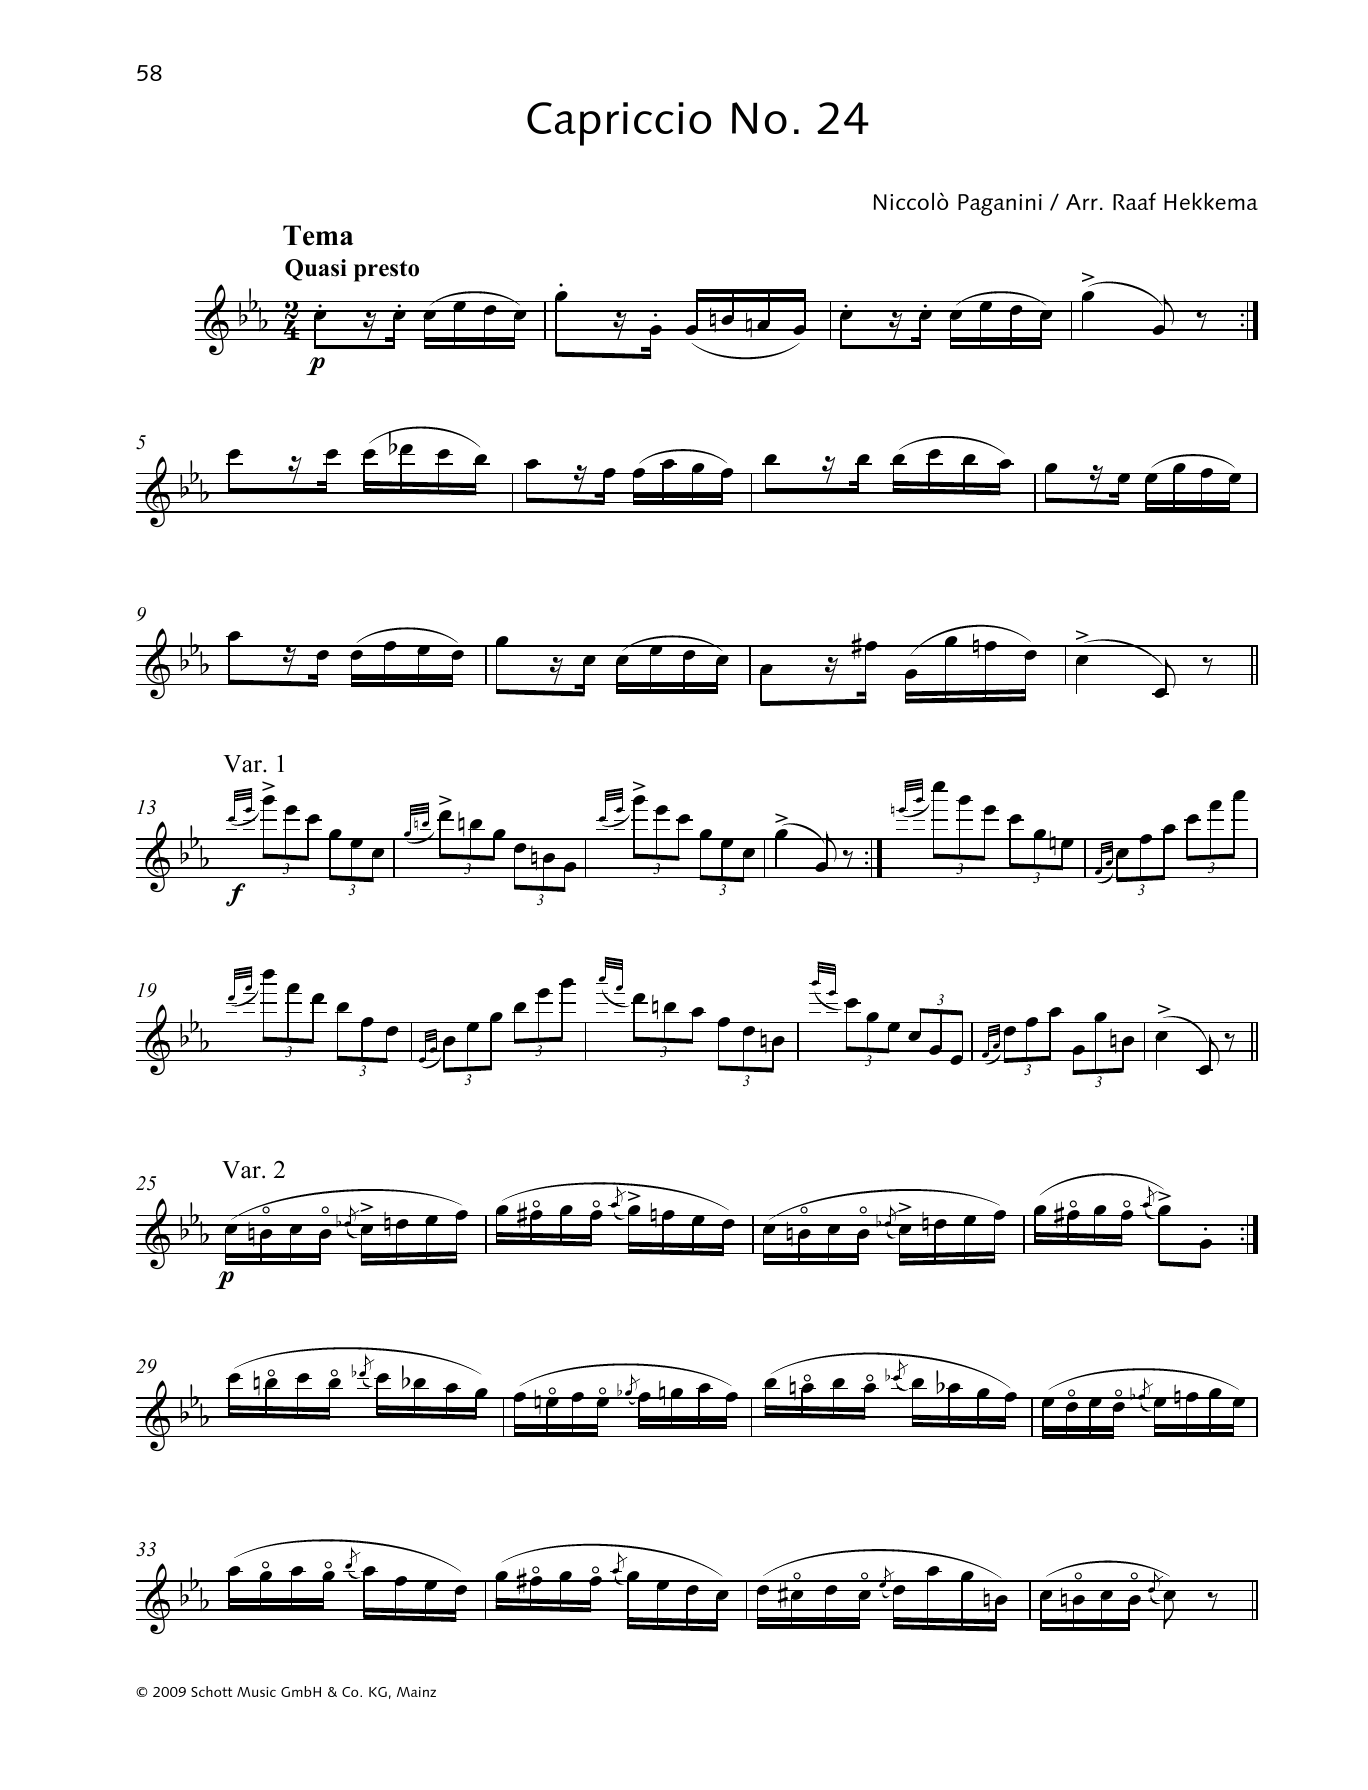 Download Niccolo Paganini Capriccio No. 24 Sheet Music